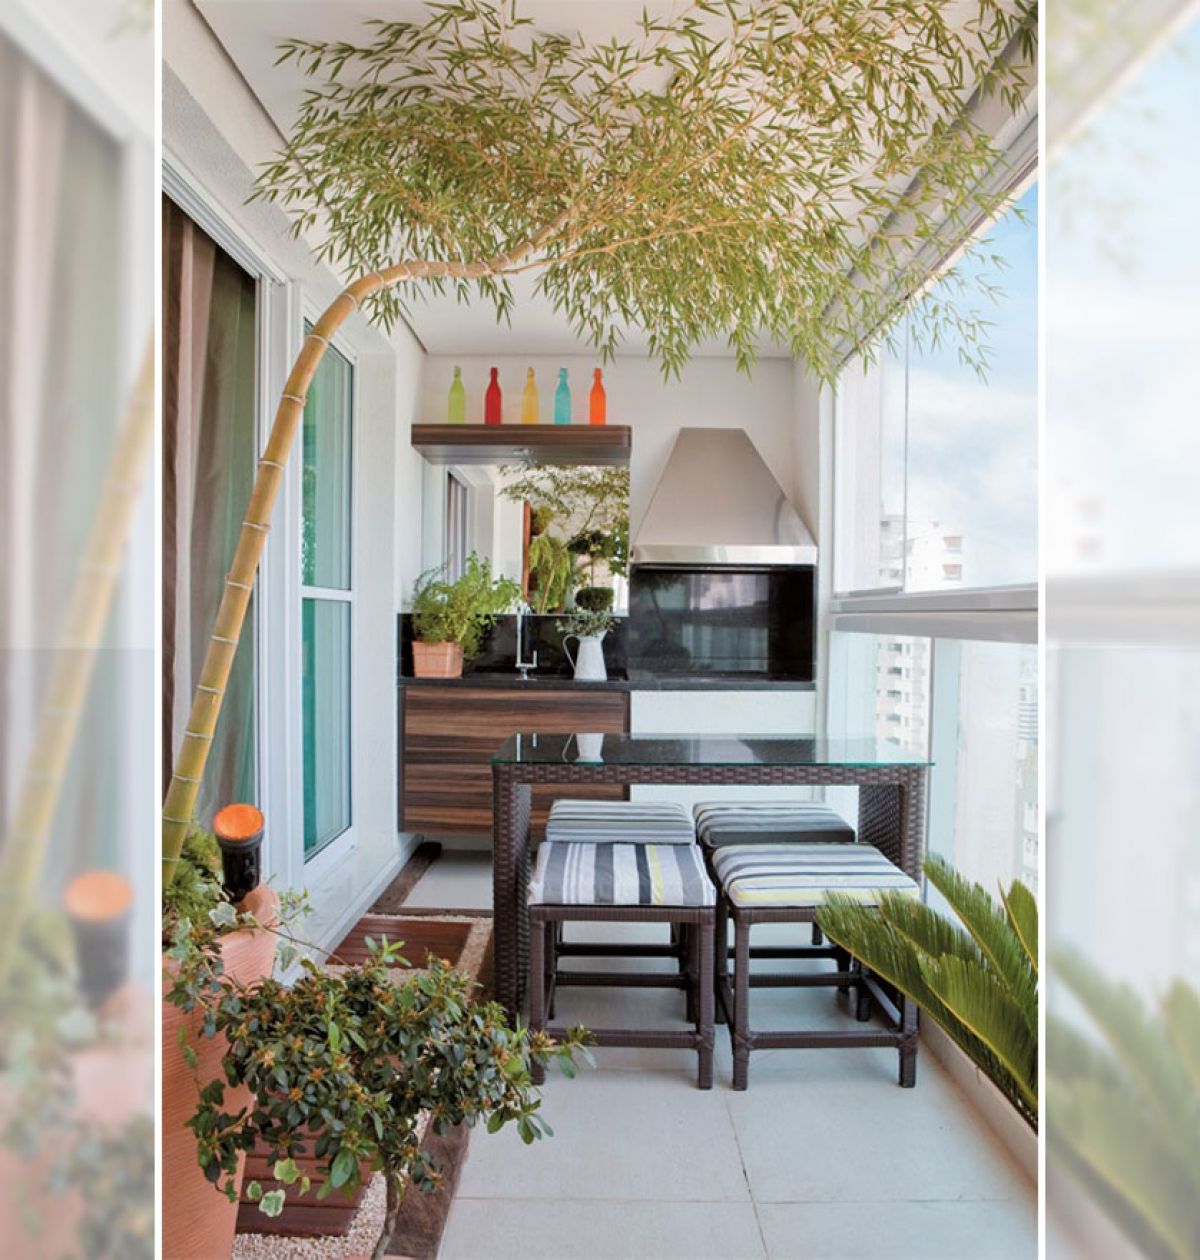 Кухня на балконе в квартире фото дизайн